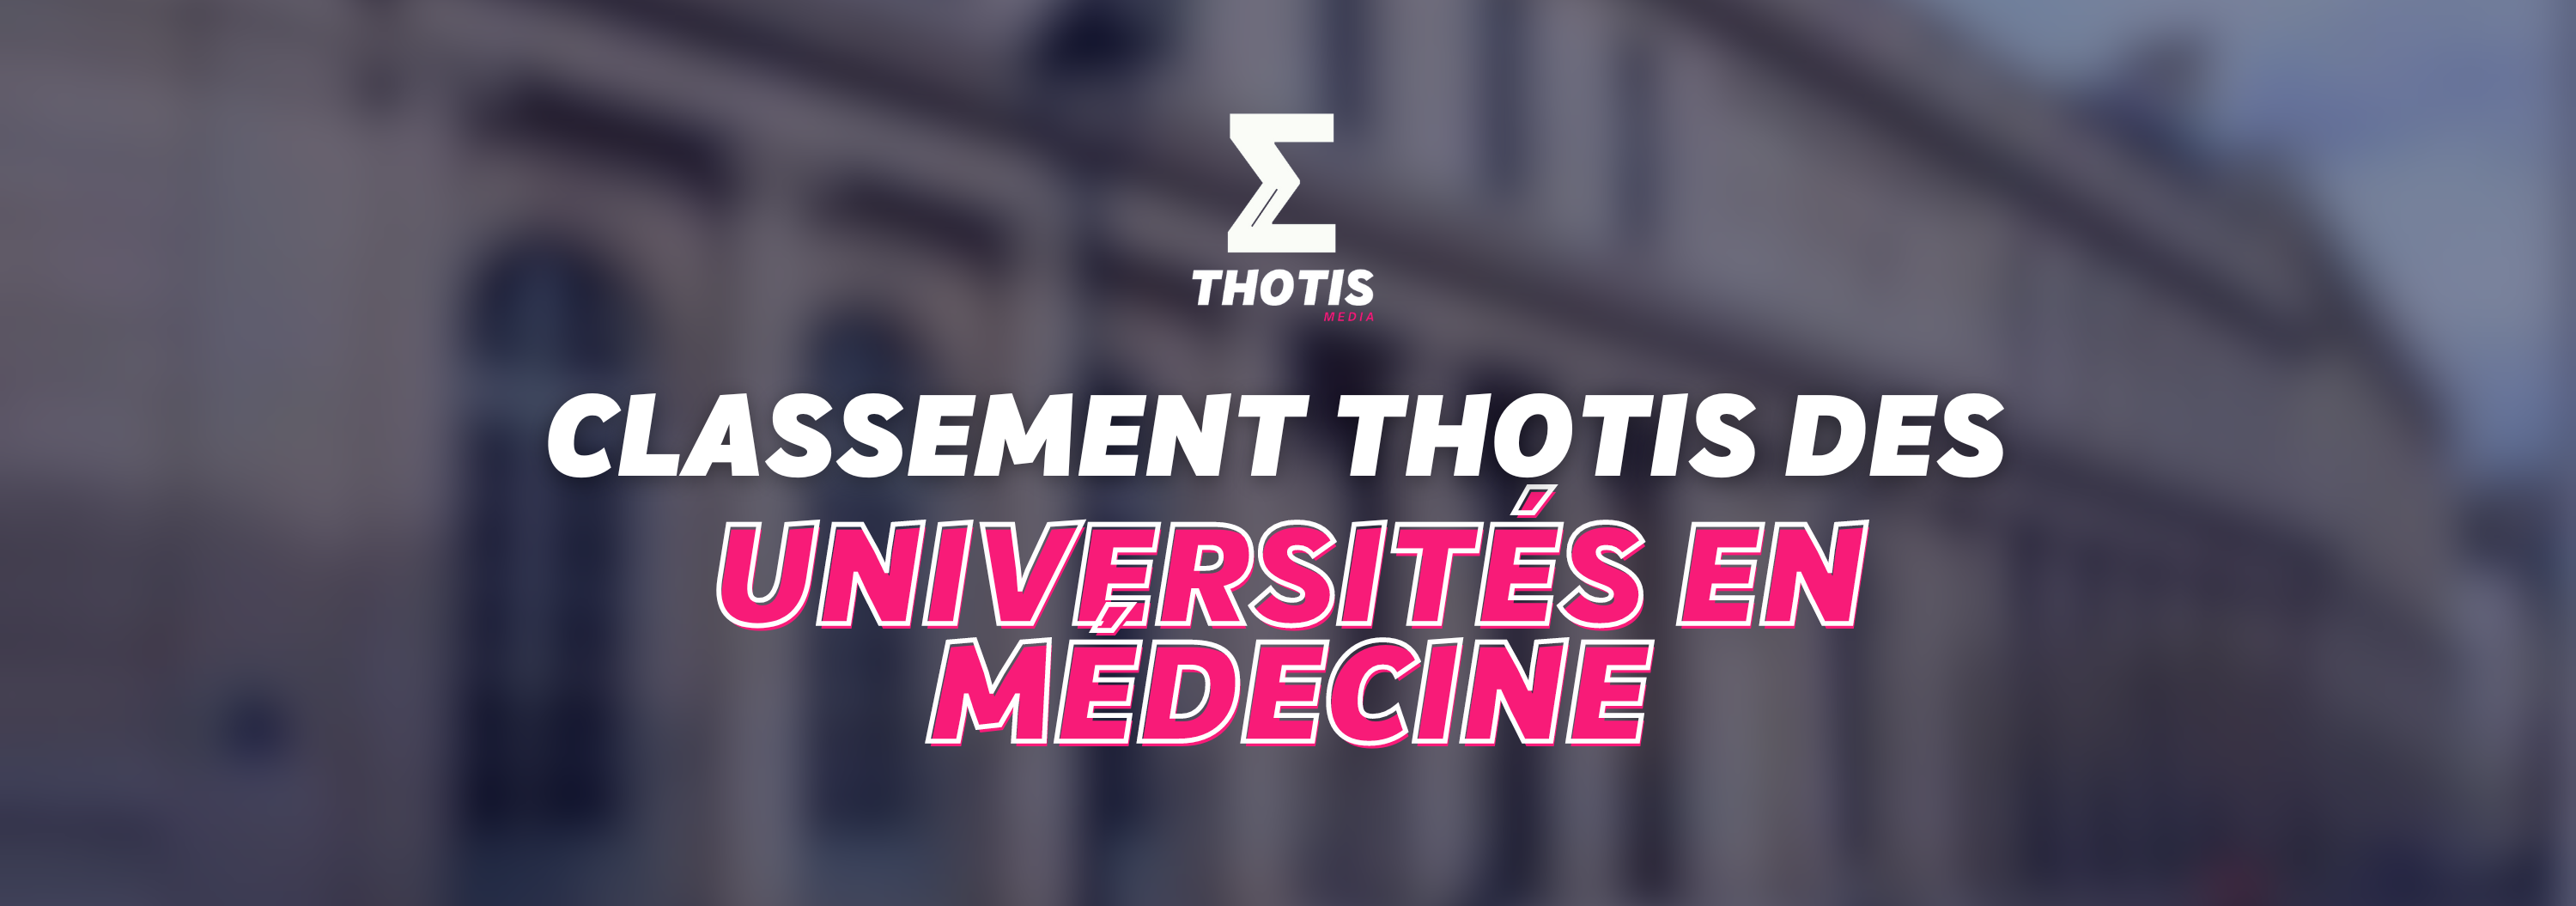 Classement Thotis des Universités en Médecine